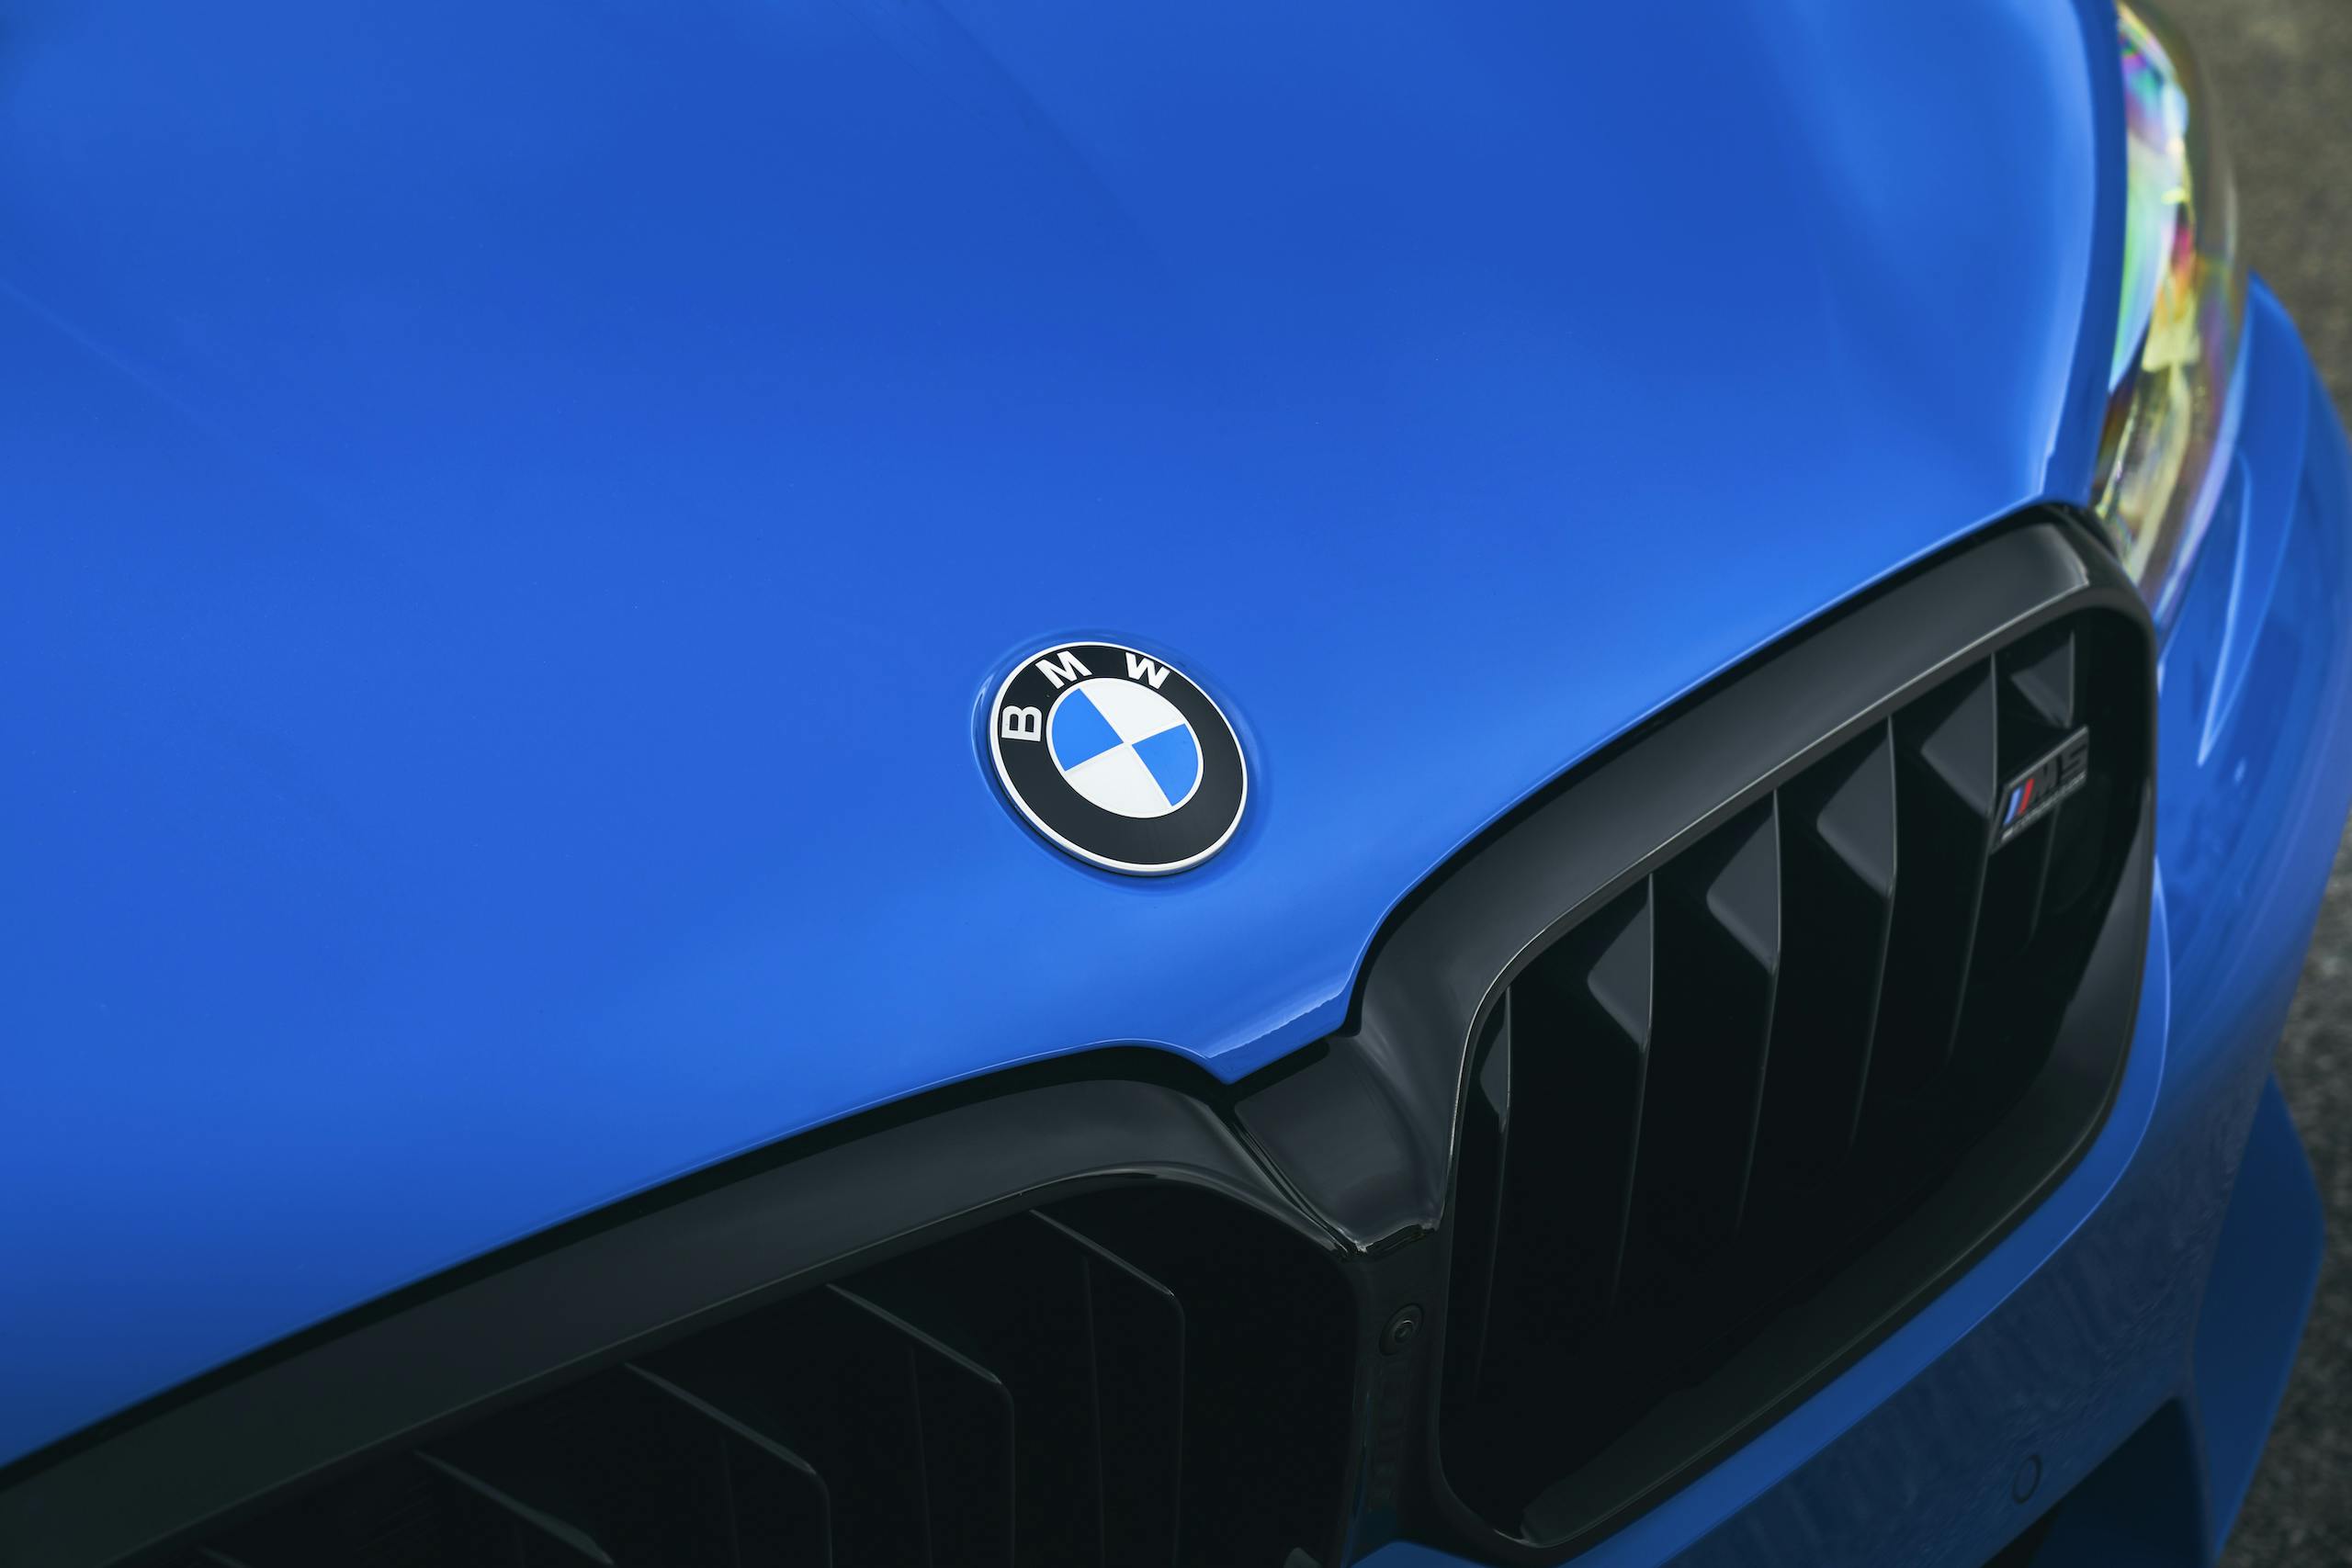 2021 BMW M5 Competition front logo emblem detail